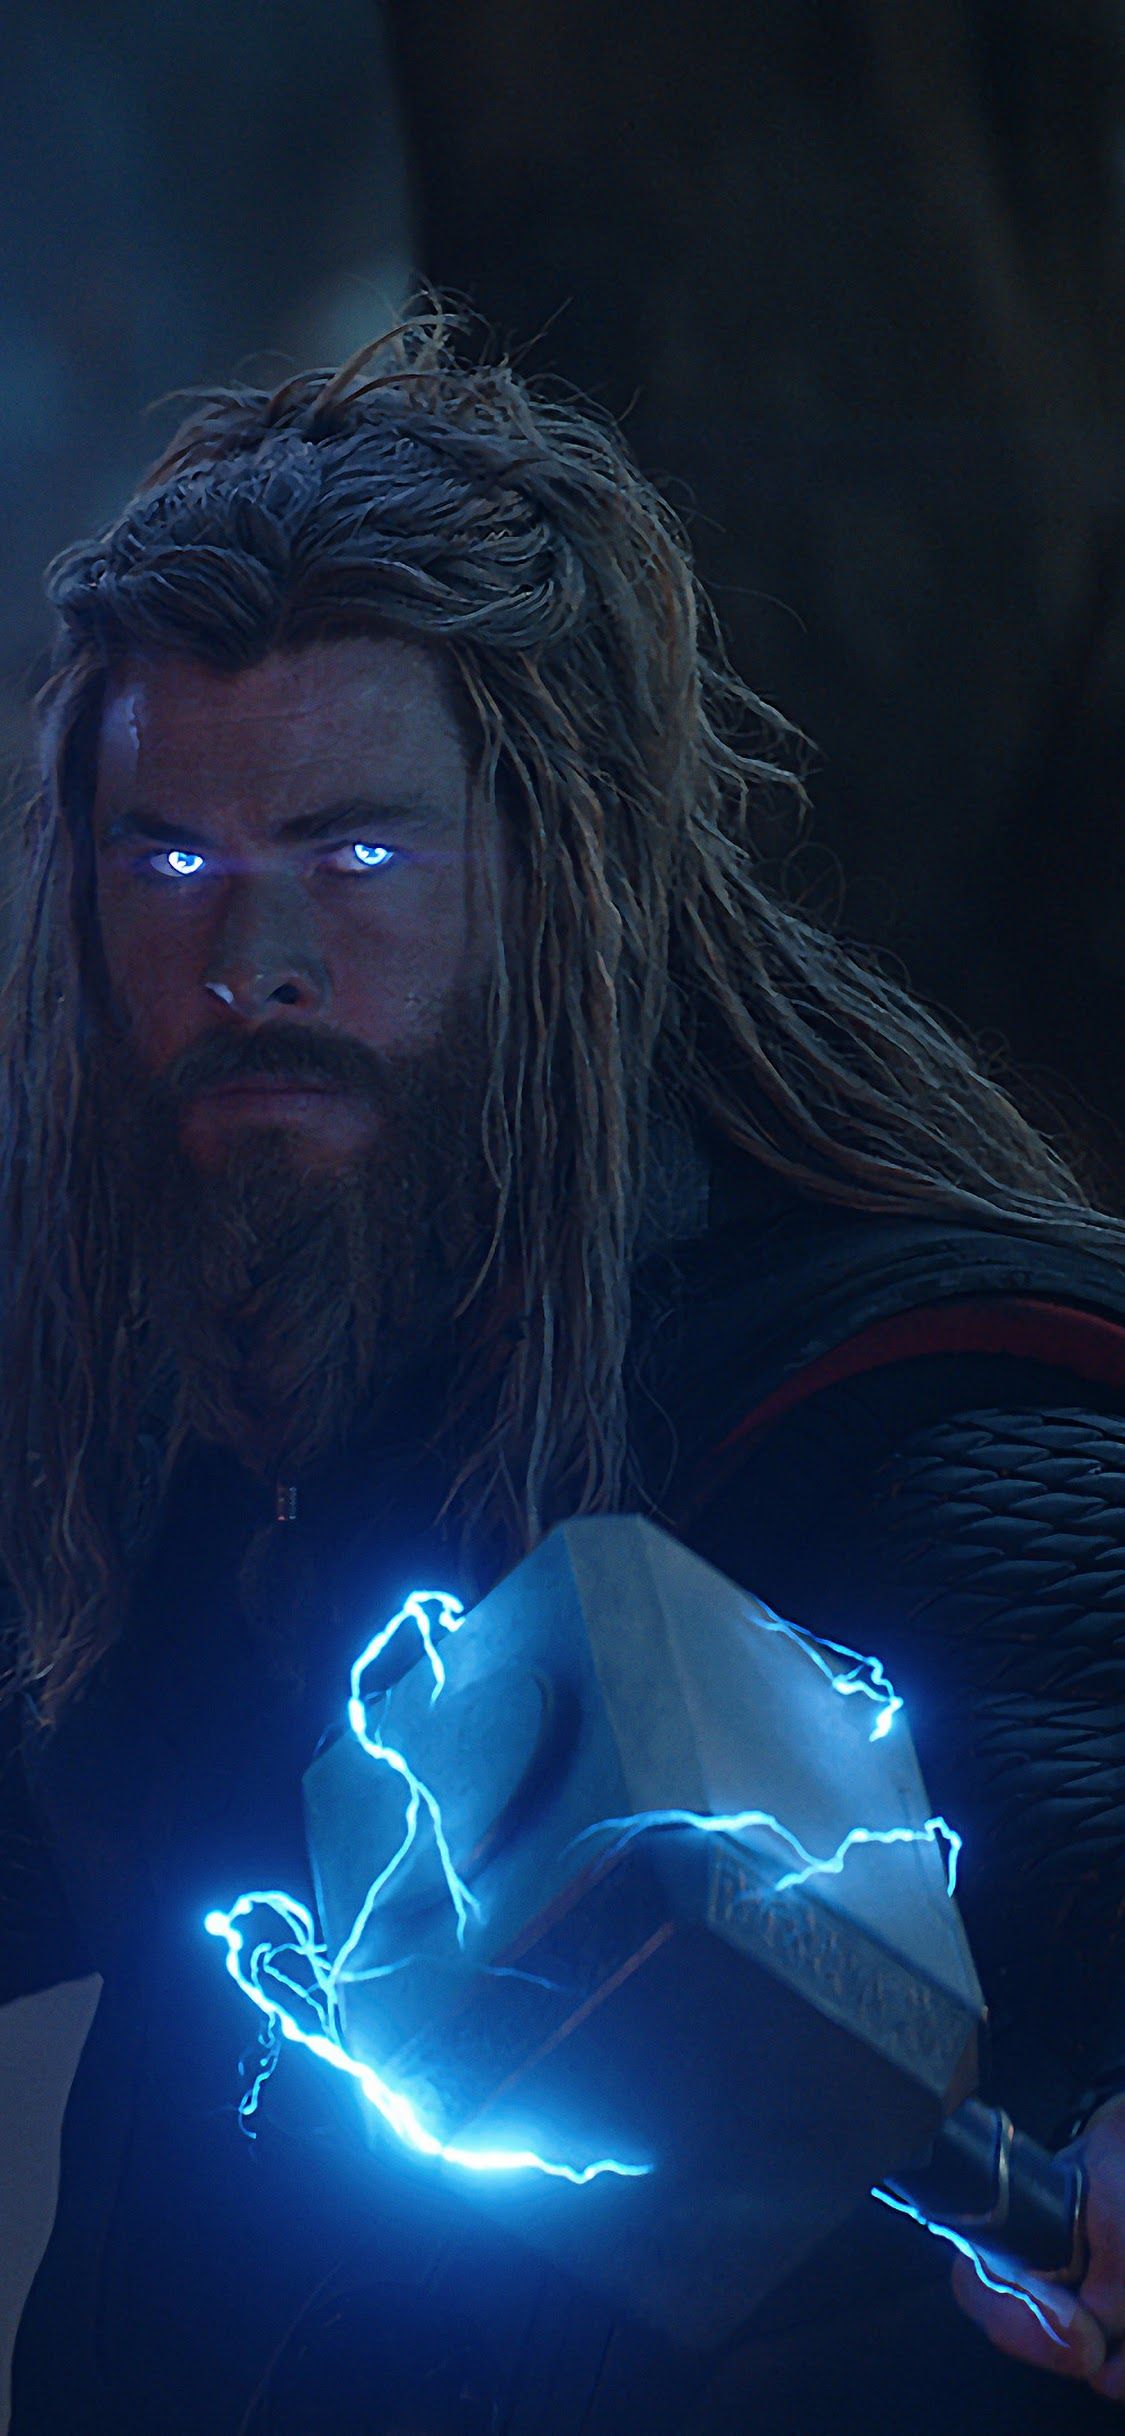 Avengers: Endgame Thor Stormbreaker Mjolnir Lightning 8K Wallpaper